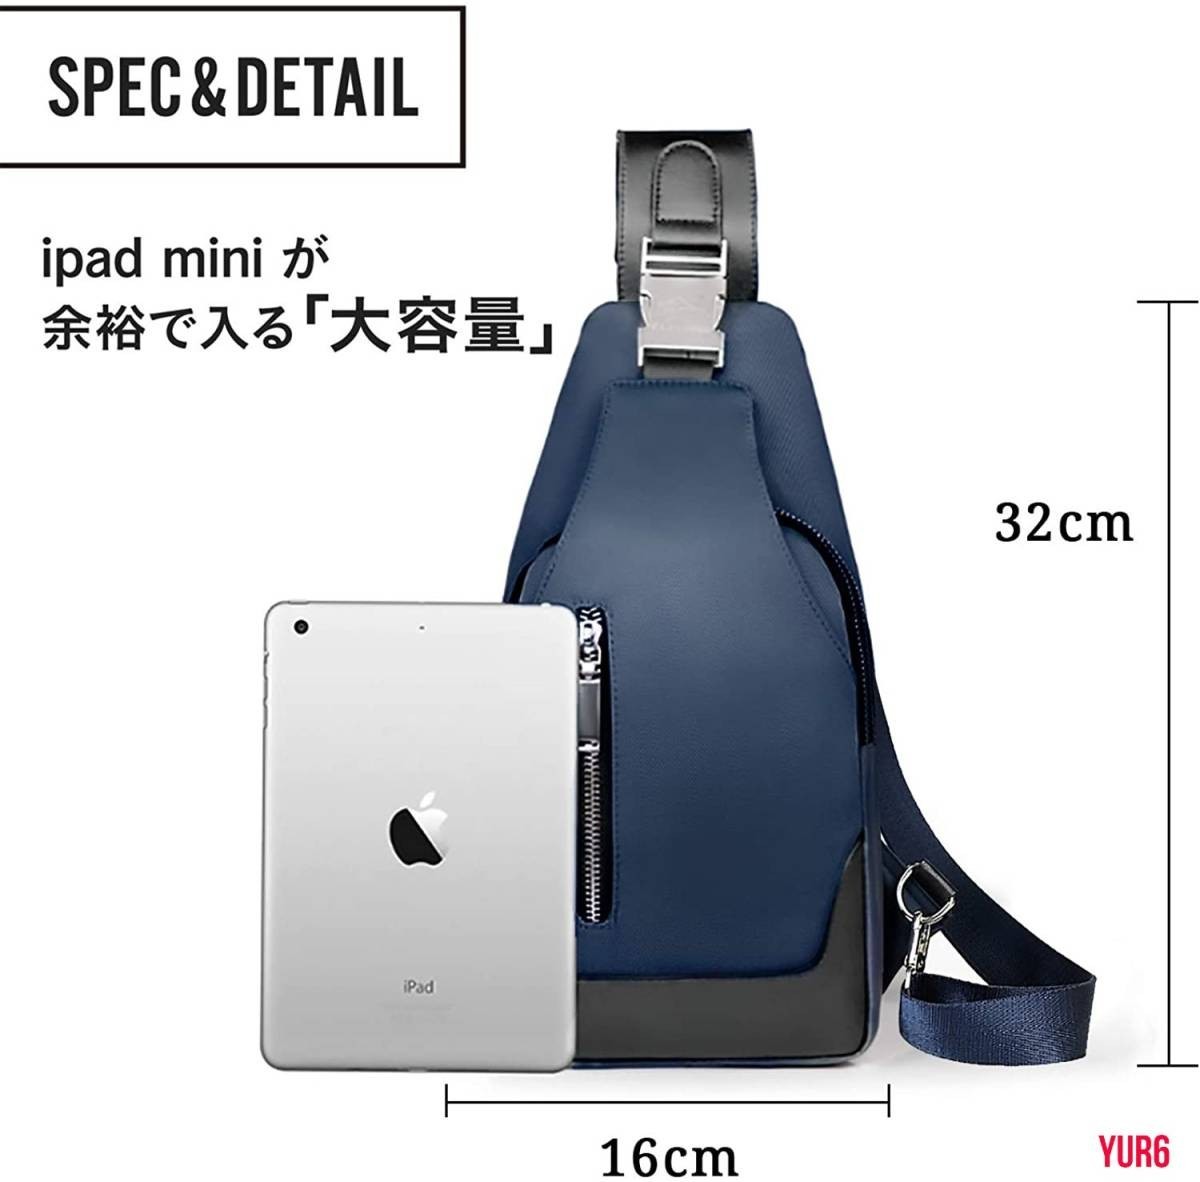 ボディバッグ メンズ 斜めがけ 大容量 軽量 防水 ワンショルダーバッグ 肩掛けバッグ 盗難防止 iPadmini収納可能 通勤 通学 ブルー